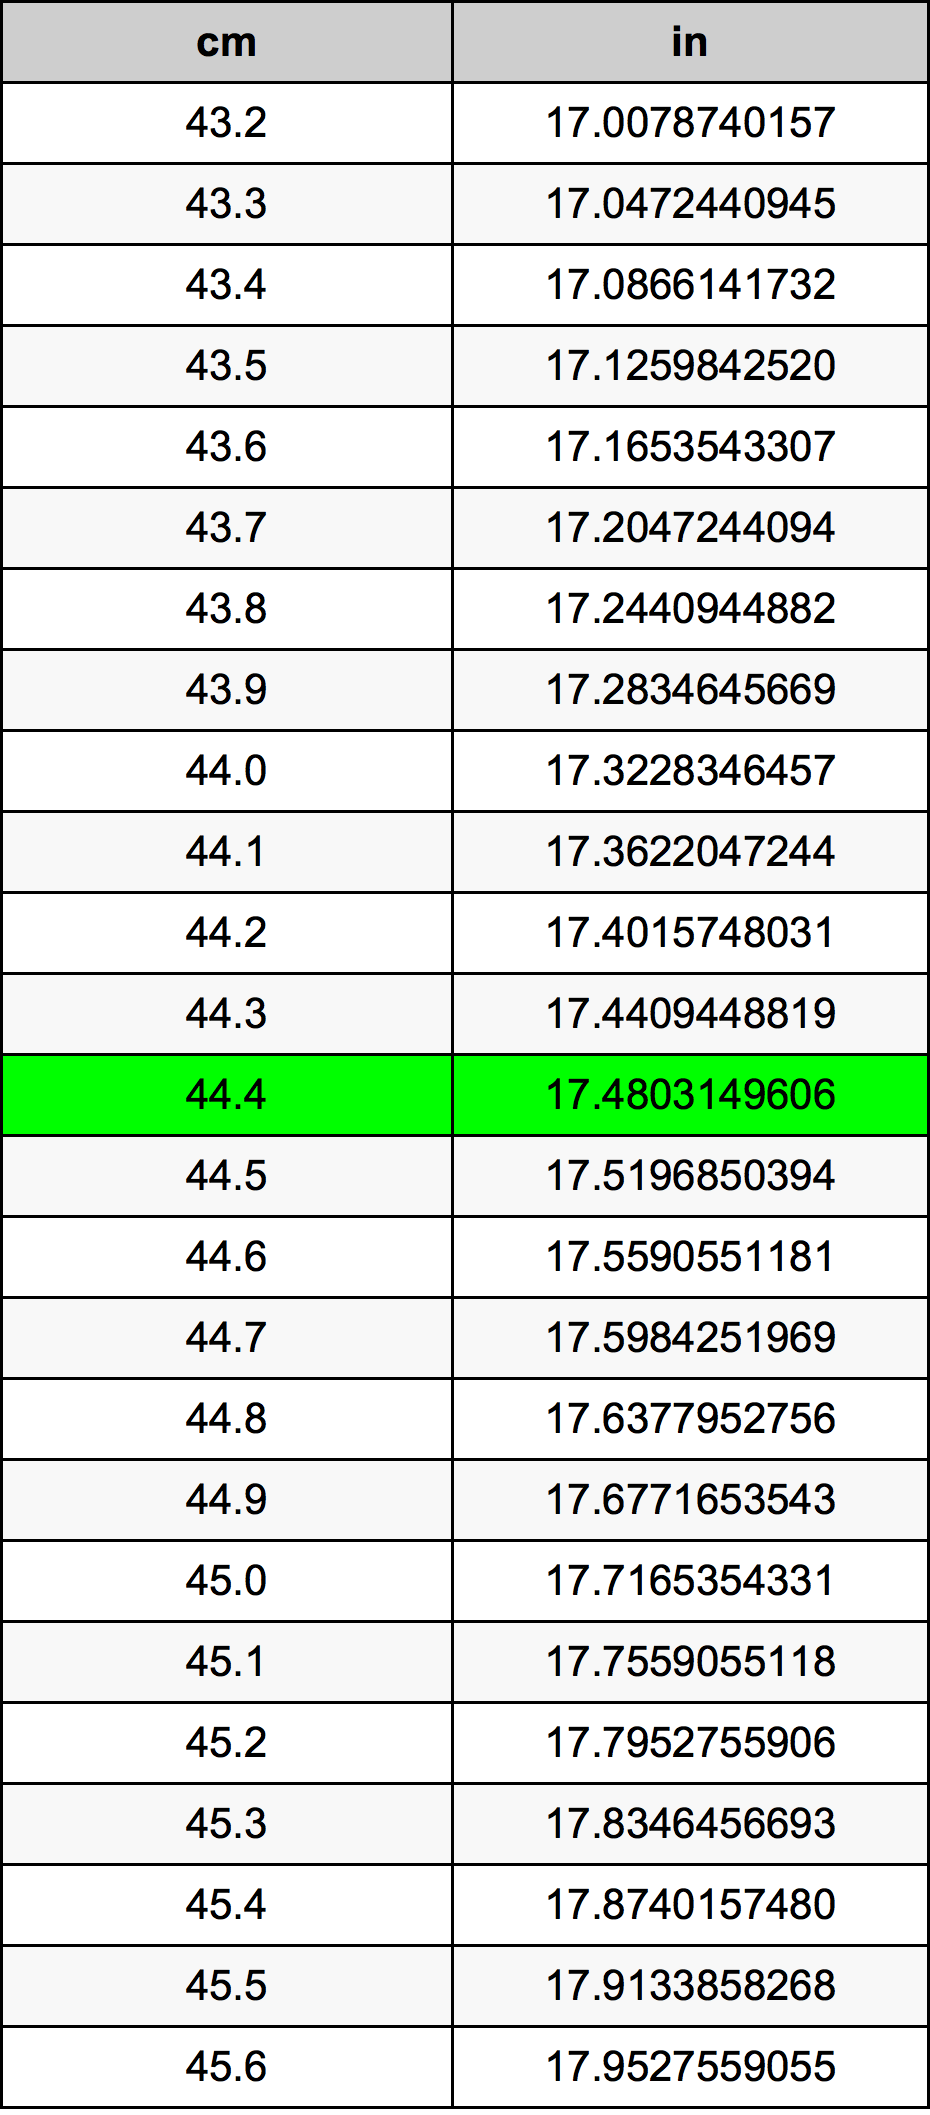 44.4 Centiméter átszámítási táblázat